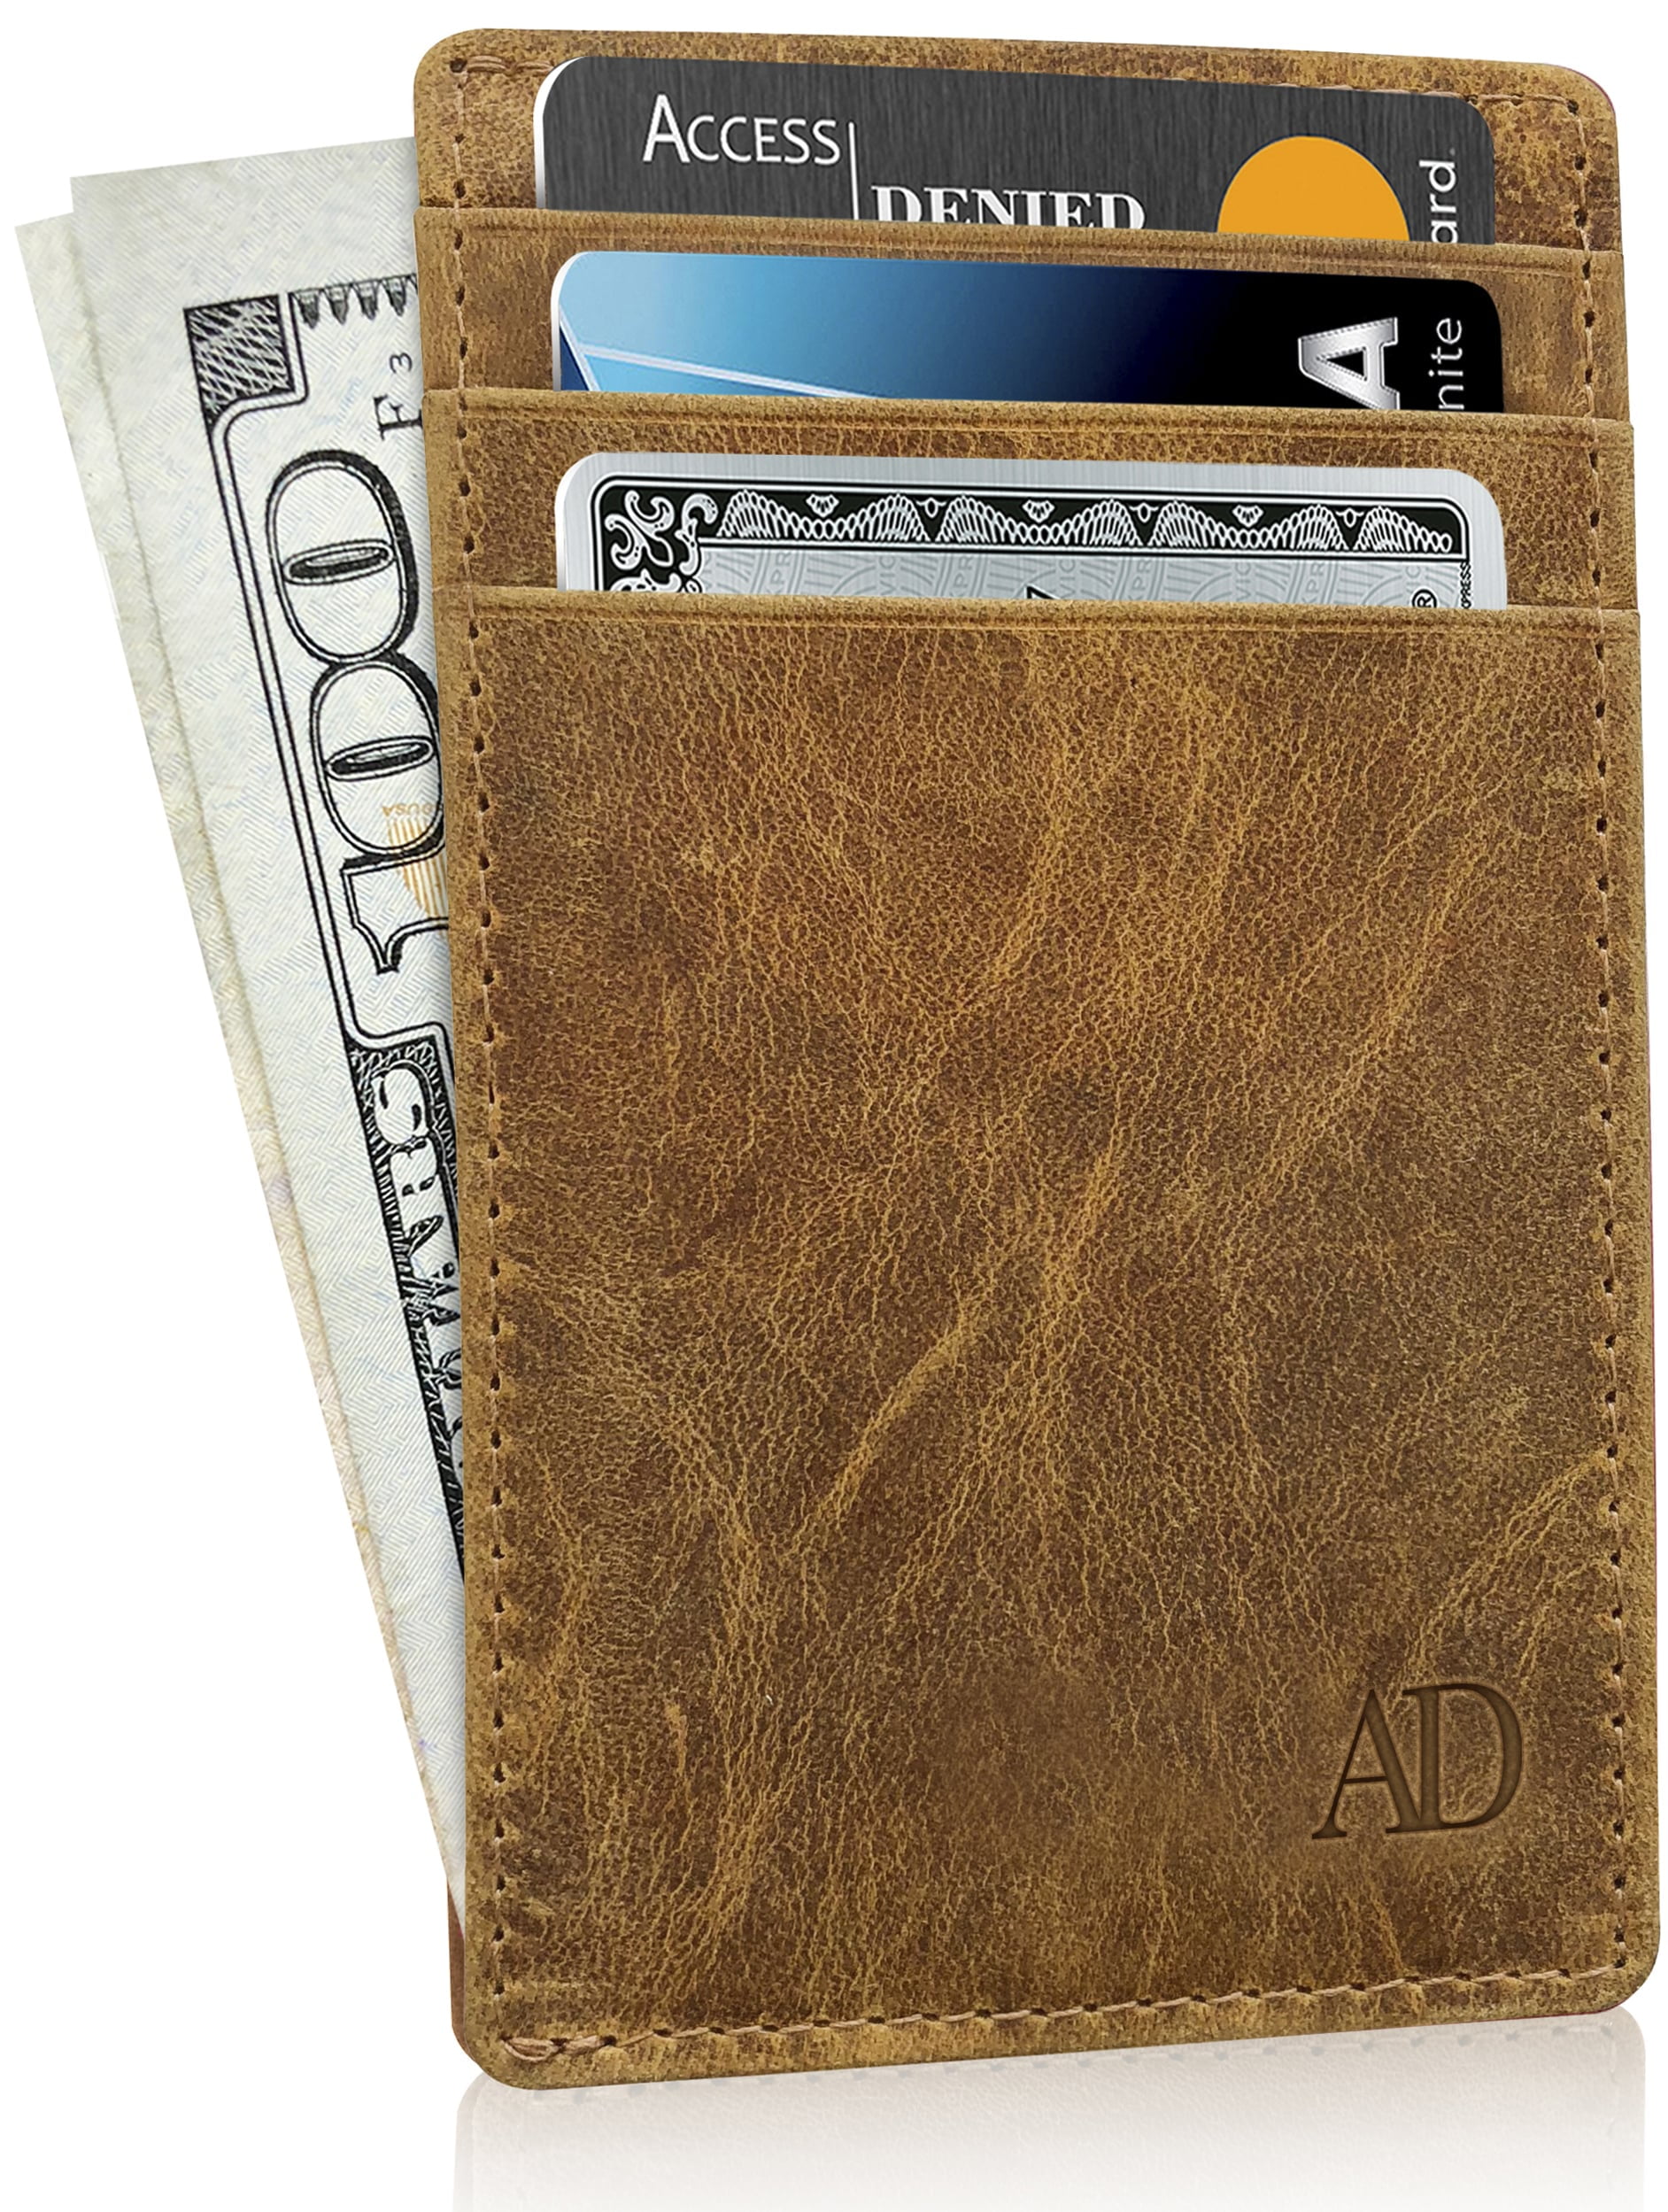 VISPRIK Men Card Wallet RFID Blocking Slim Minimalist Front Pocket Wallet Credit Card Holder Protector Vintage Brown Genuine Leather Purse 12 Slots for Credit Cards & Cash & 1 Coin Zipper Pocket